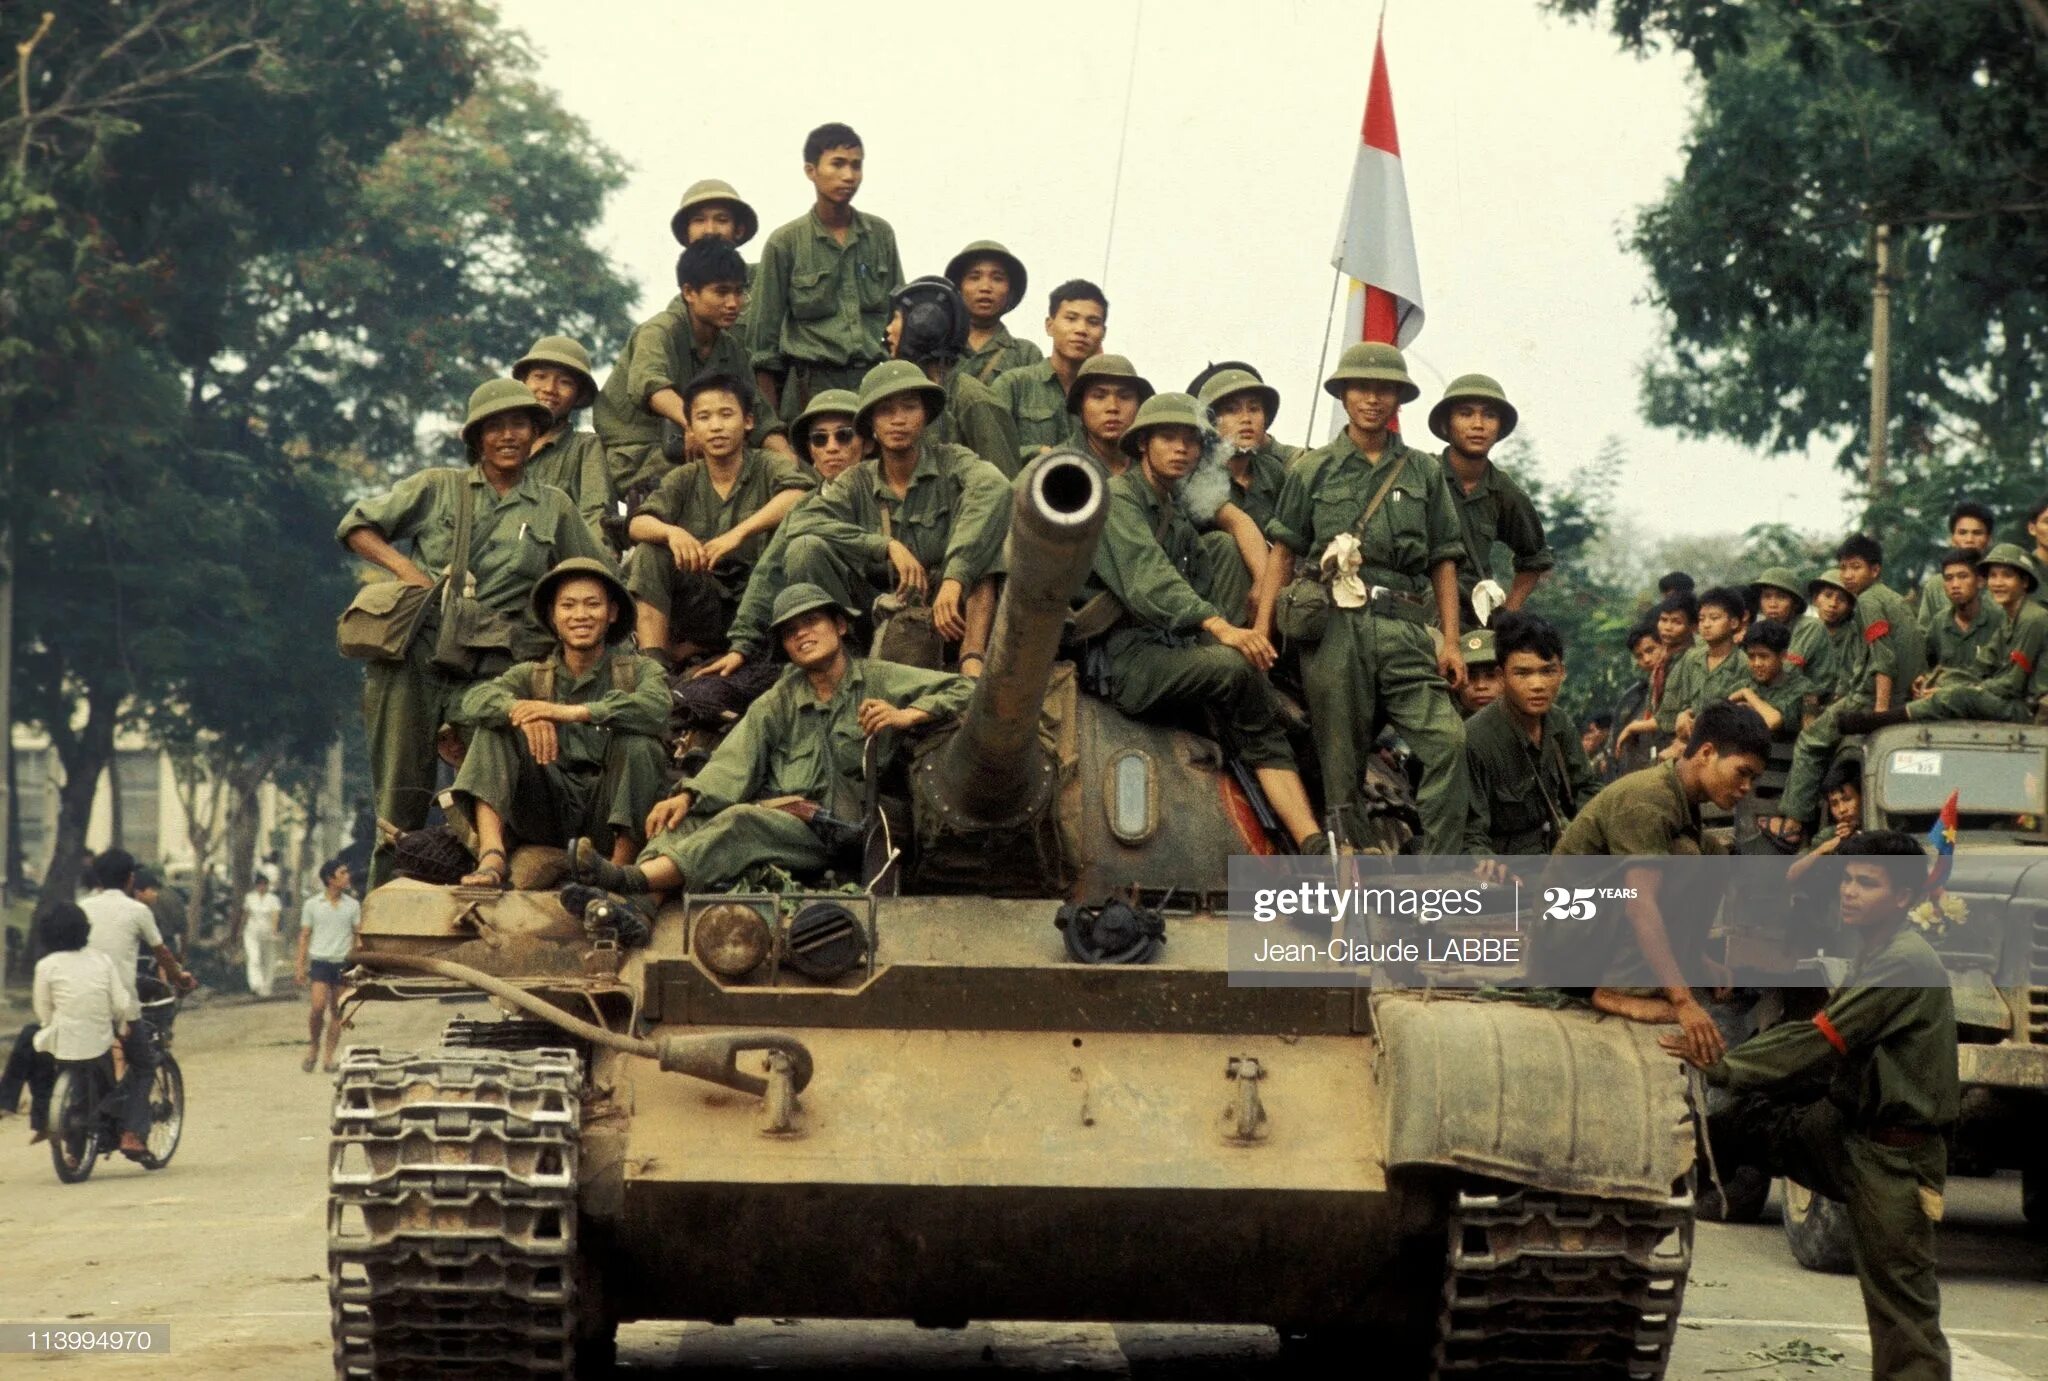 Вьетнамская армия в Сайгоне 1975. Национальный фронт освобождения Южного Вьетнама (НФОЮВ). Сайгон 30 апреля 1975. Русский вьетнамец